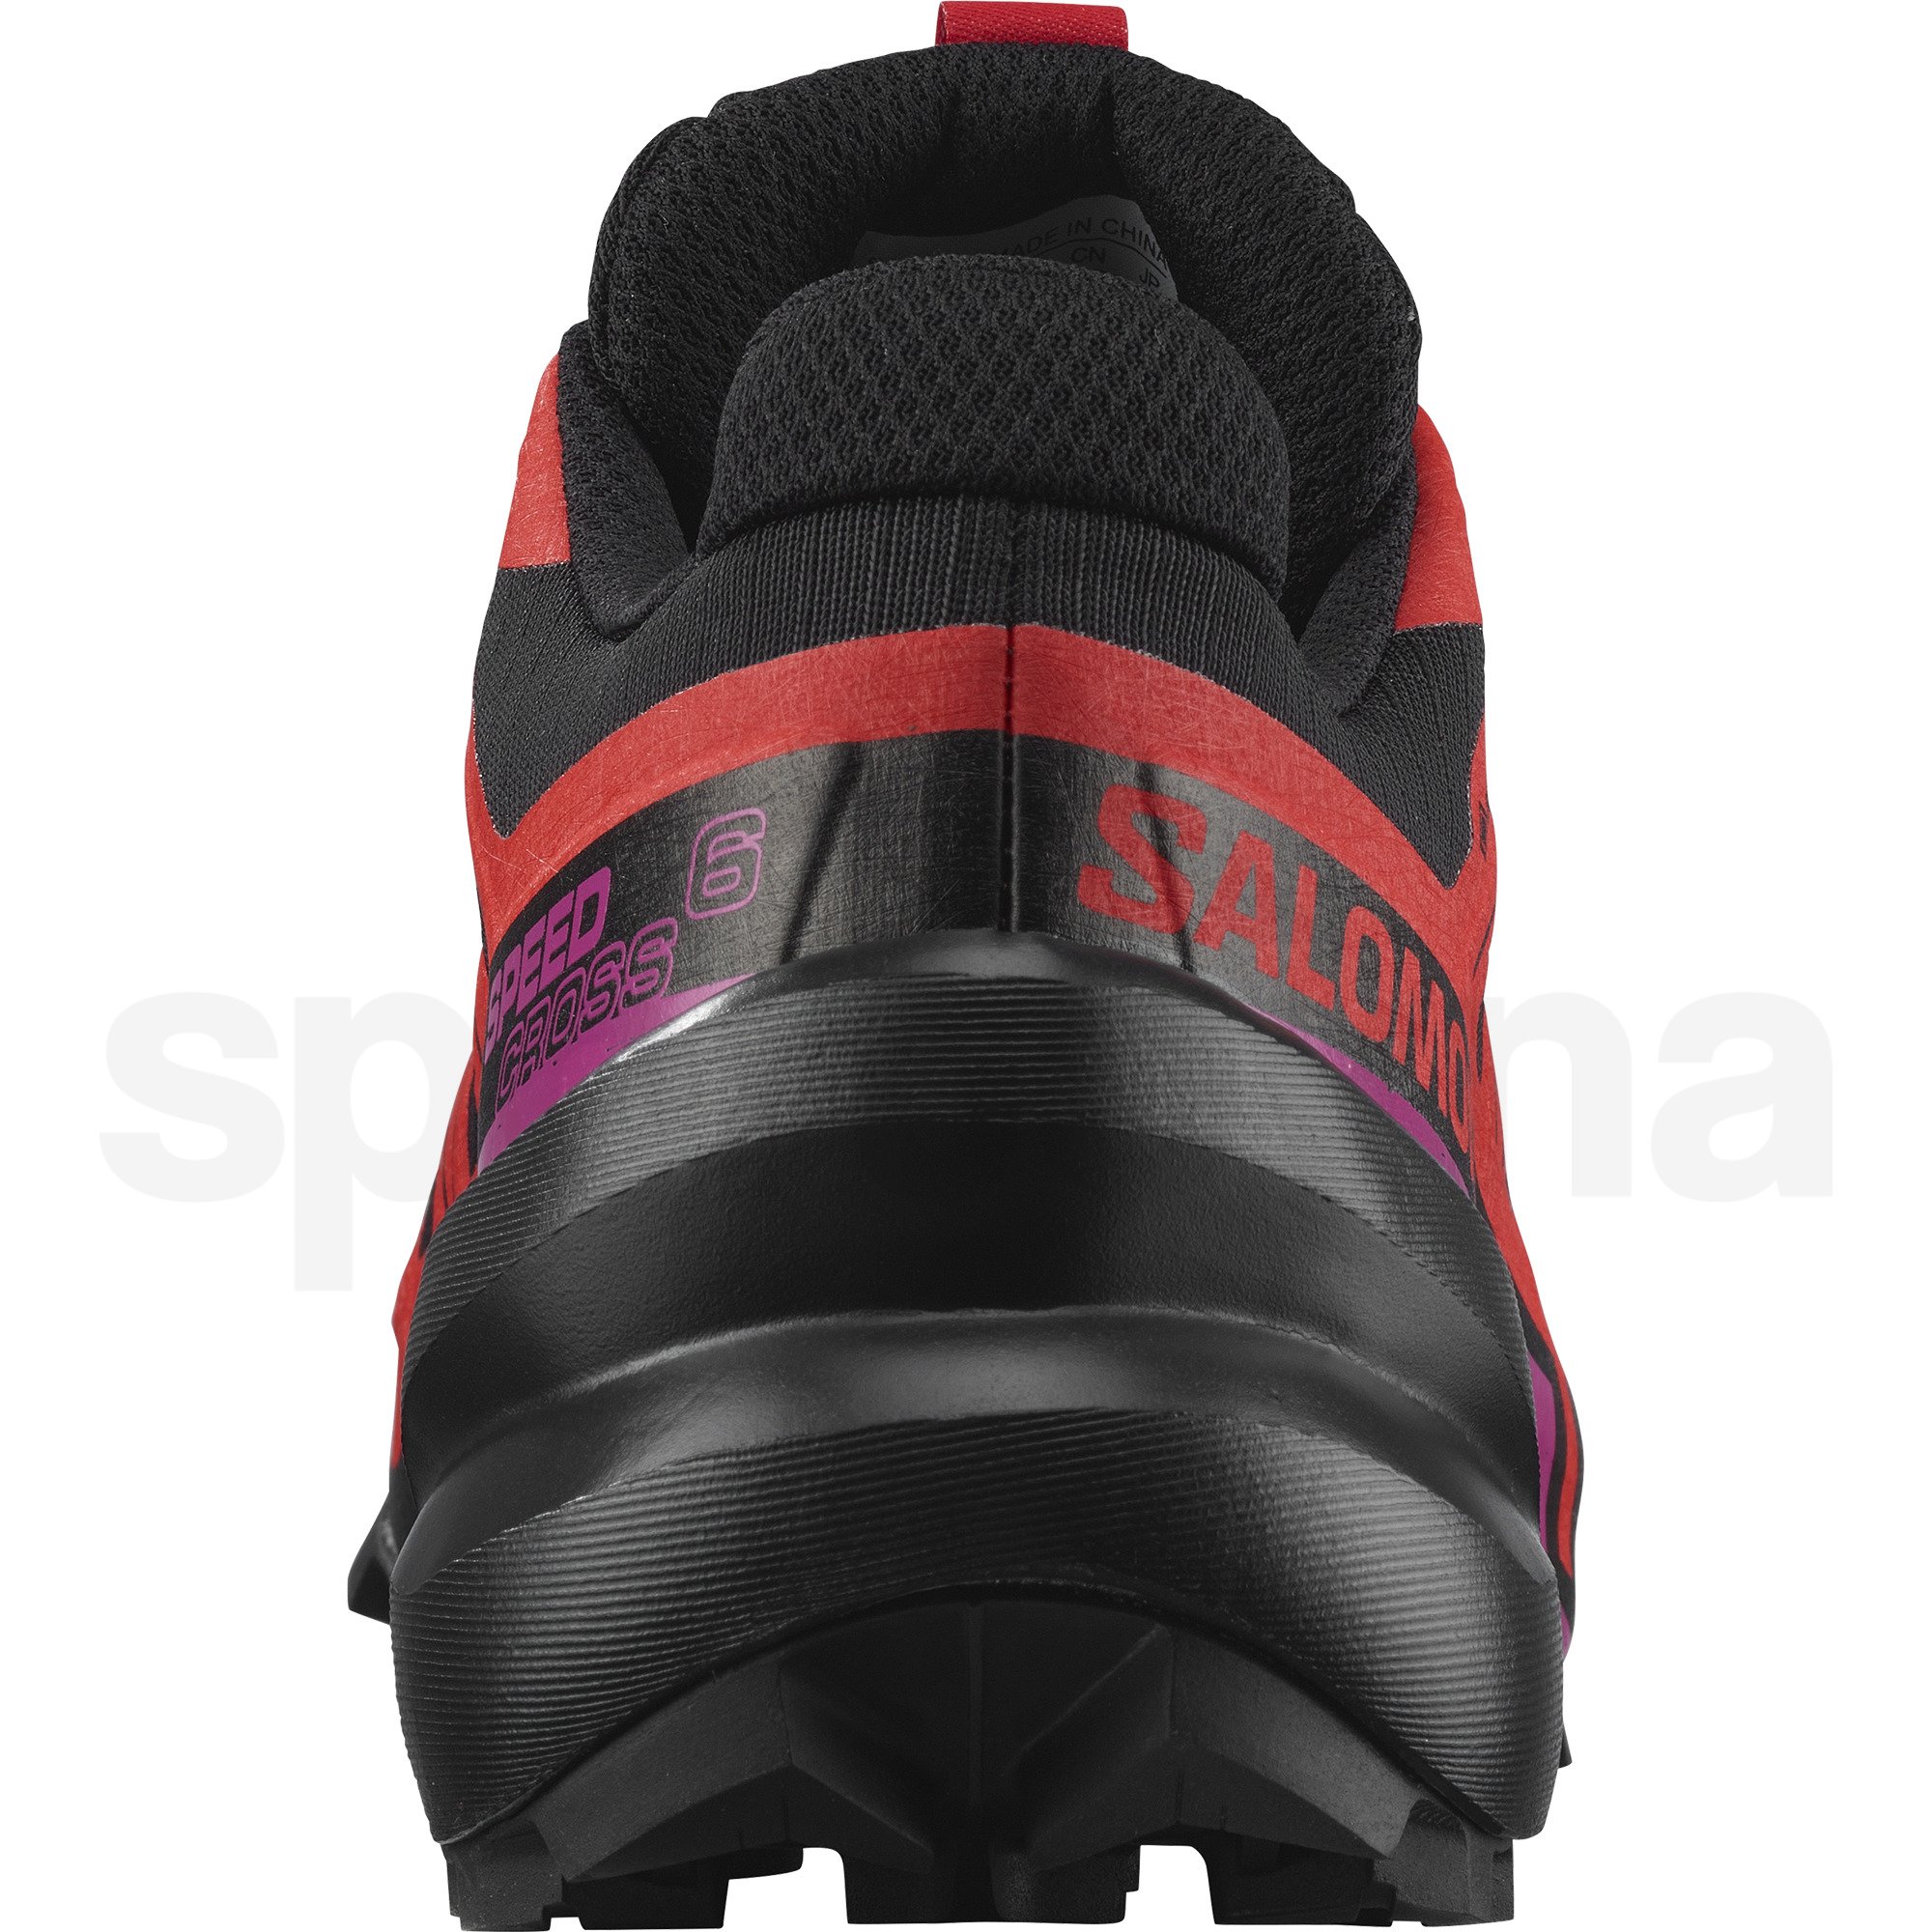 Obuv Salomon Speedcross 6 GTX W - černá/červená/růžová